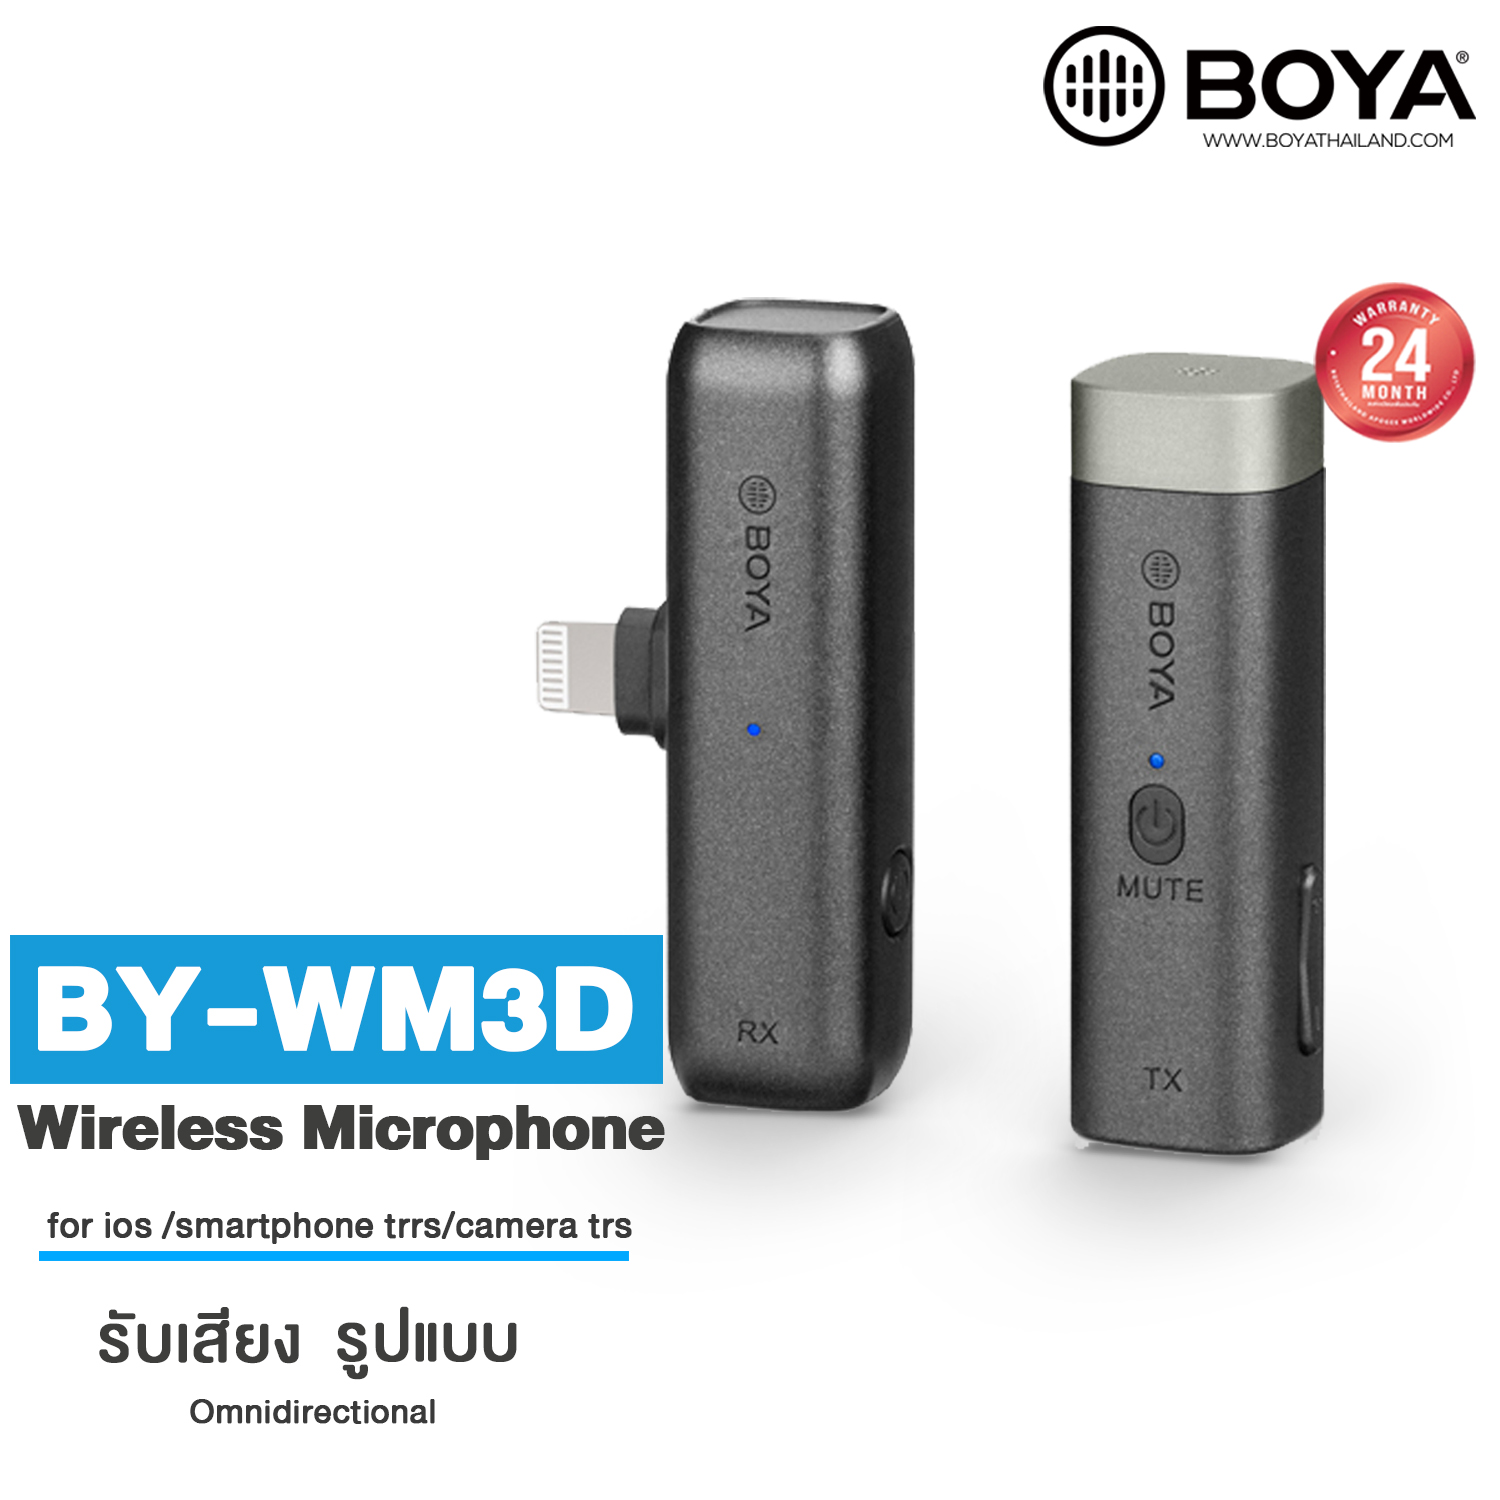 Boya BY-WM3D Wireless Microphone